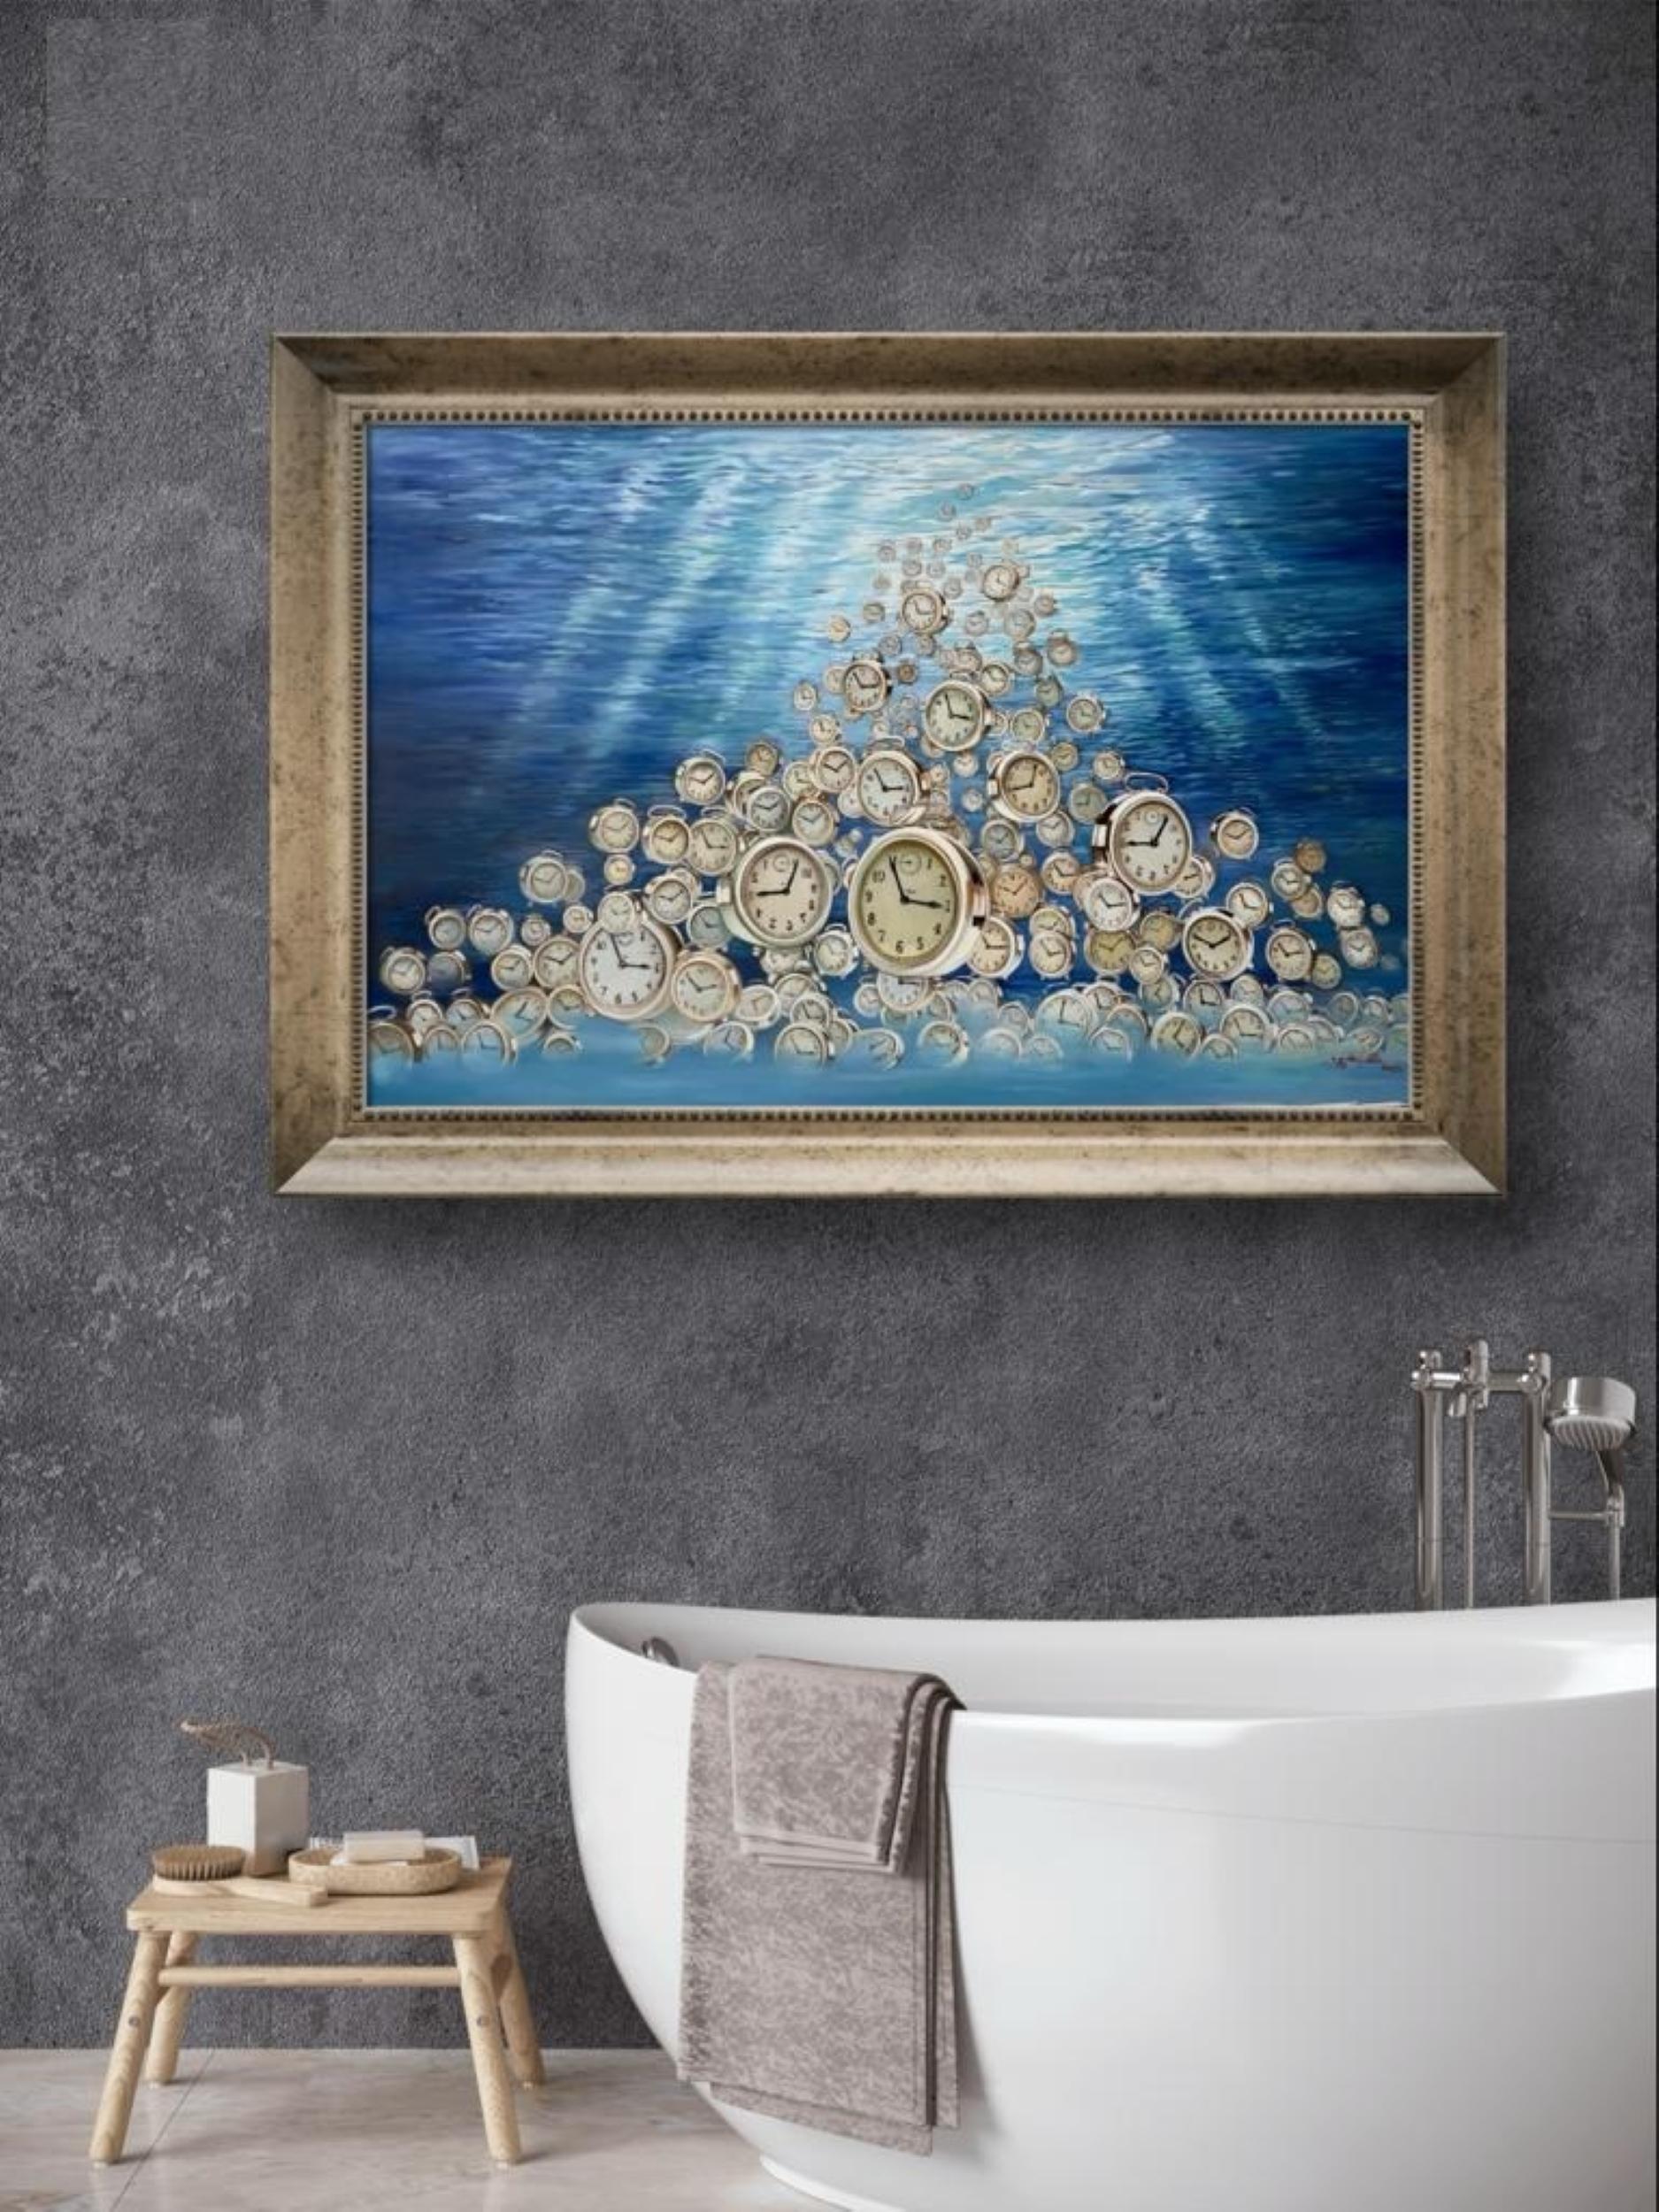 the Ticking Sound Under The Ocean ist Öl auf Leinwand von Hani Naji aus seiner Serie Objects and Preselection.  Hani Naji versucht, durch die Wiederholung von Objekten, die Elemente und Symbole sind, Themen und Bedeutung mit Hilfe des Surrealismus